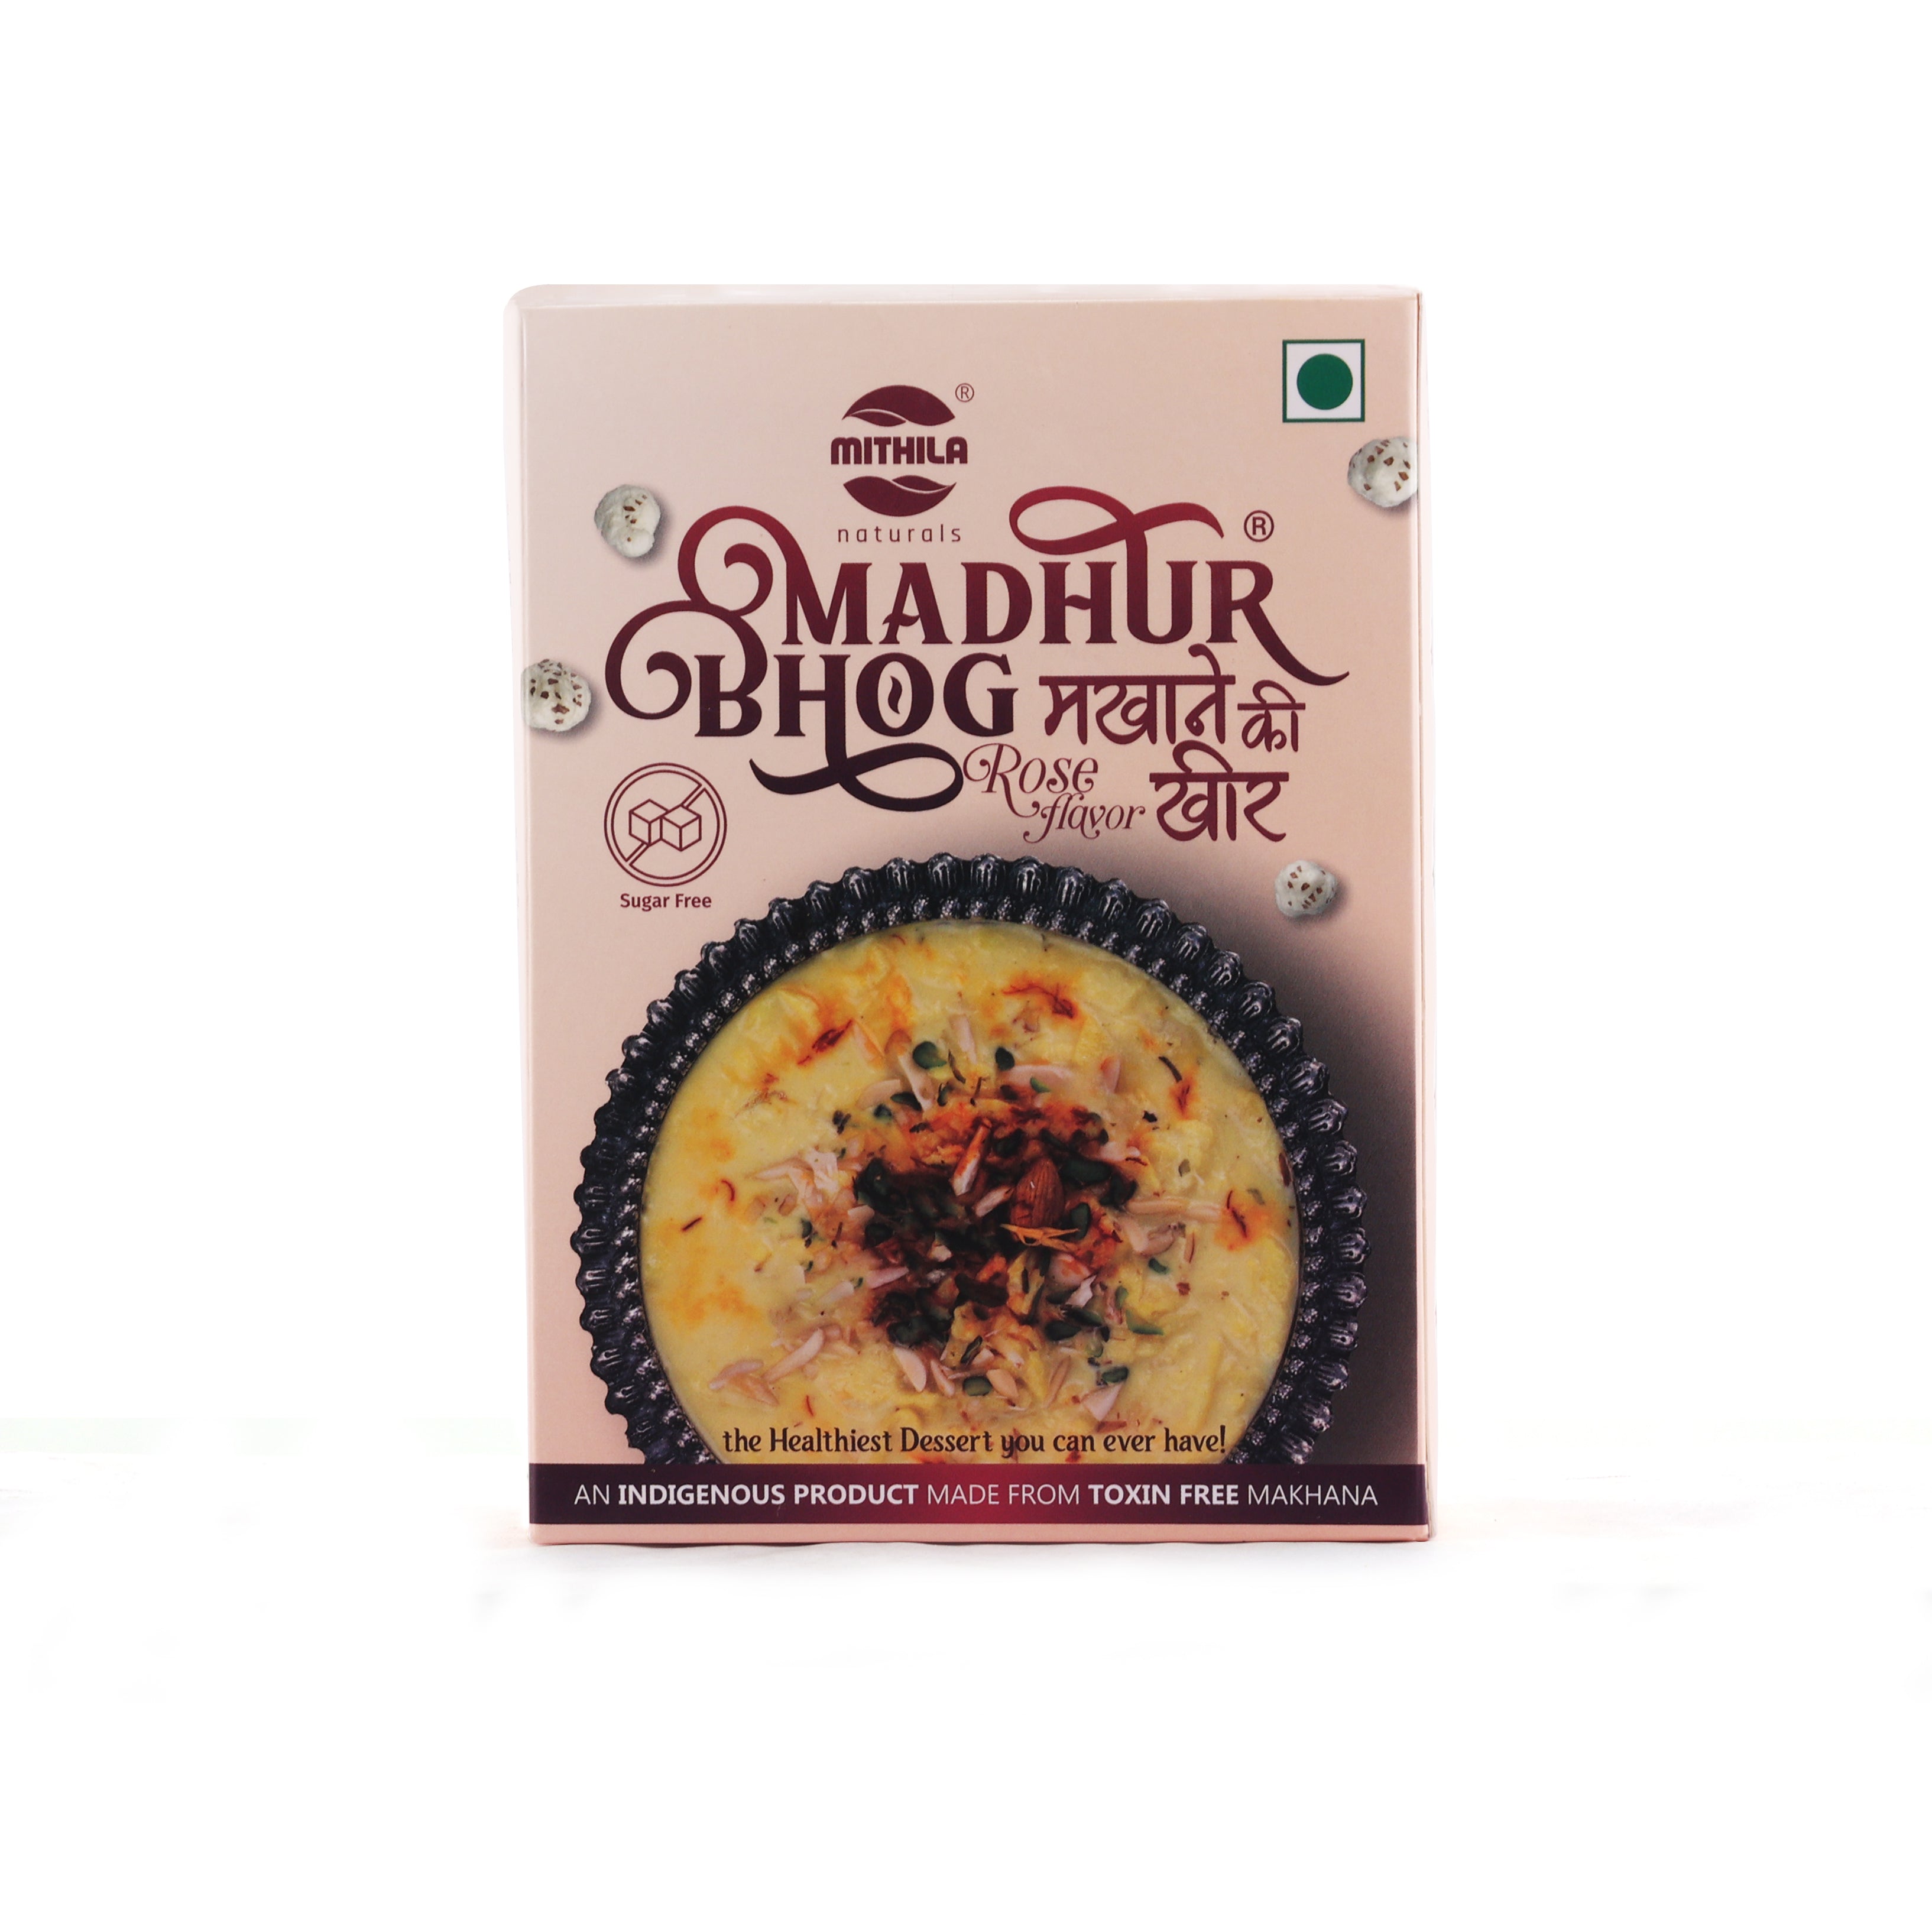 Madhur Bhog Rose Sugar Free Makhana Kheer - 85 g